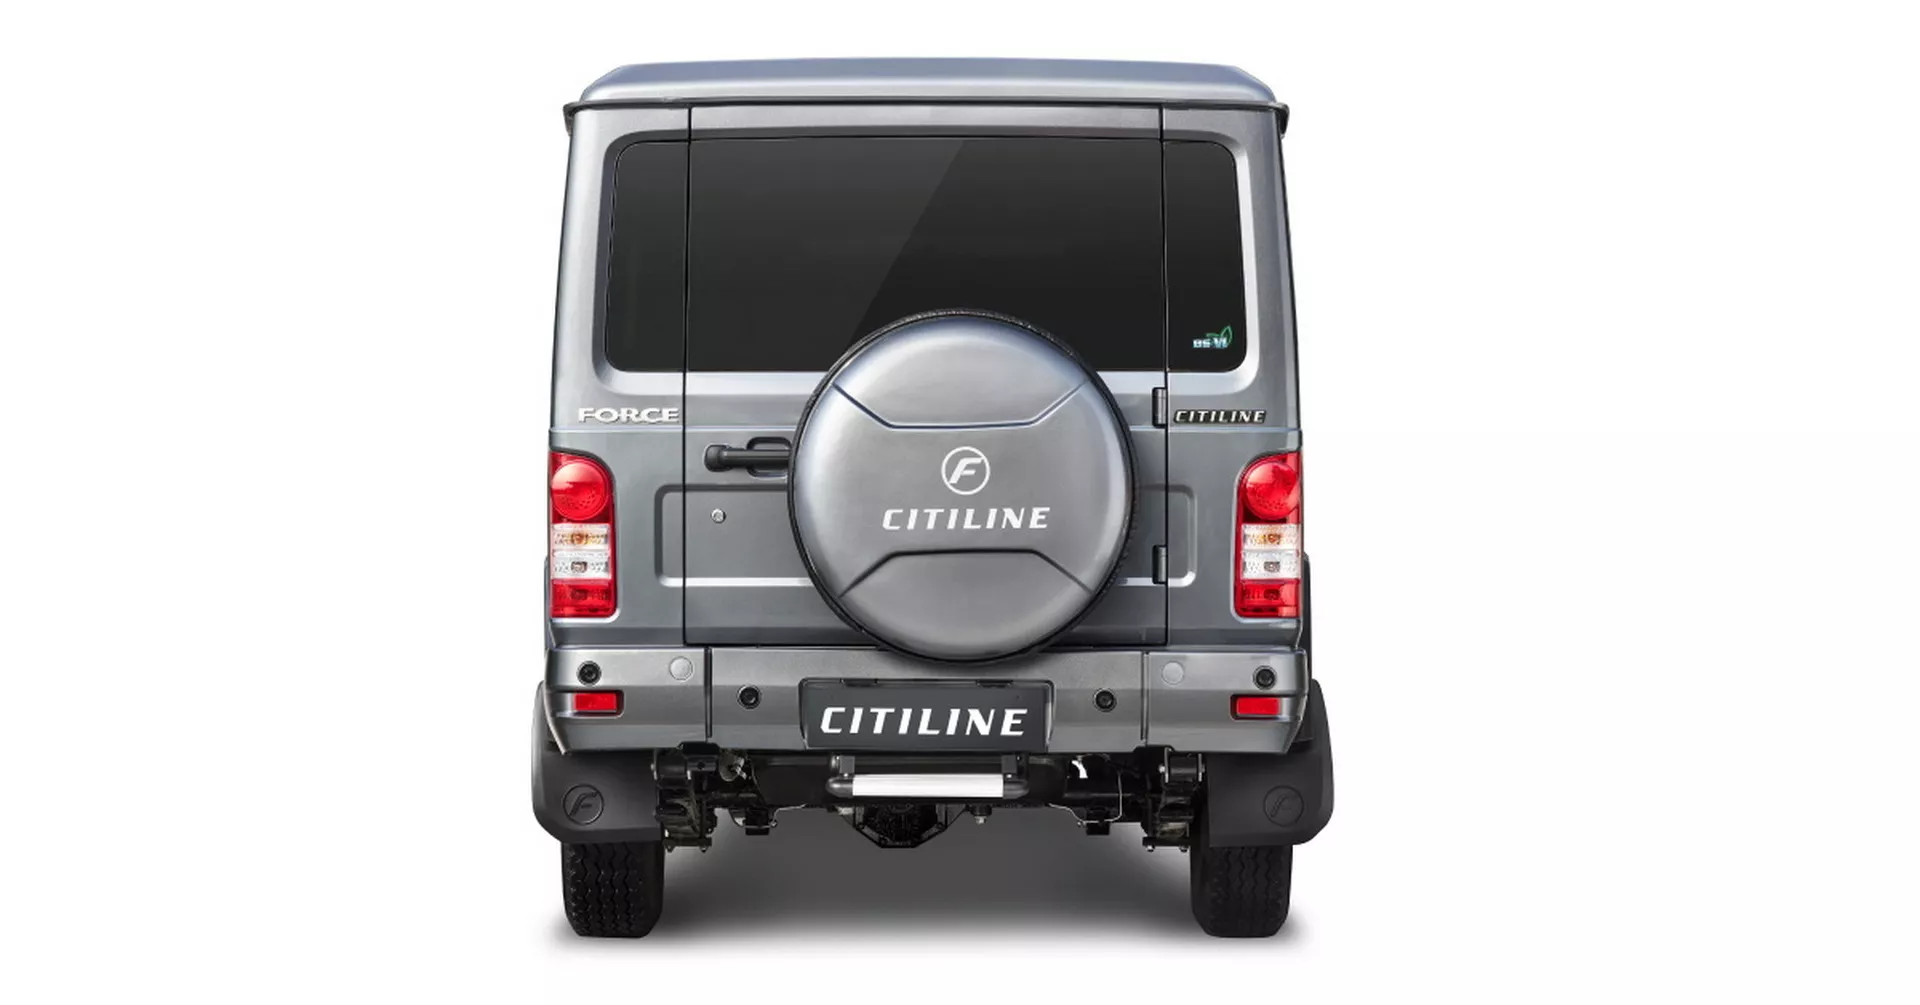 انطلاق SUV هندية عملاقة بـ 10 مقاعد وتصميم مستوحى من سيارات جي كلاس القديمة 7